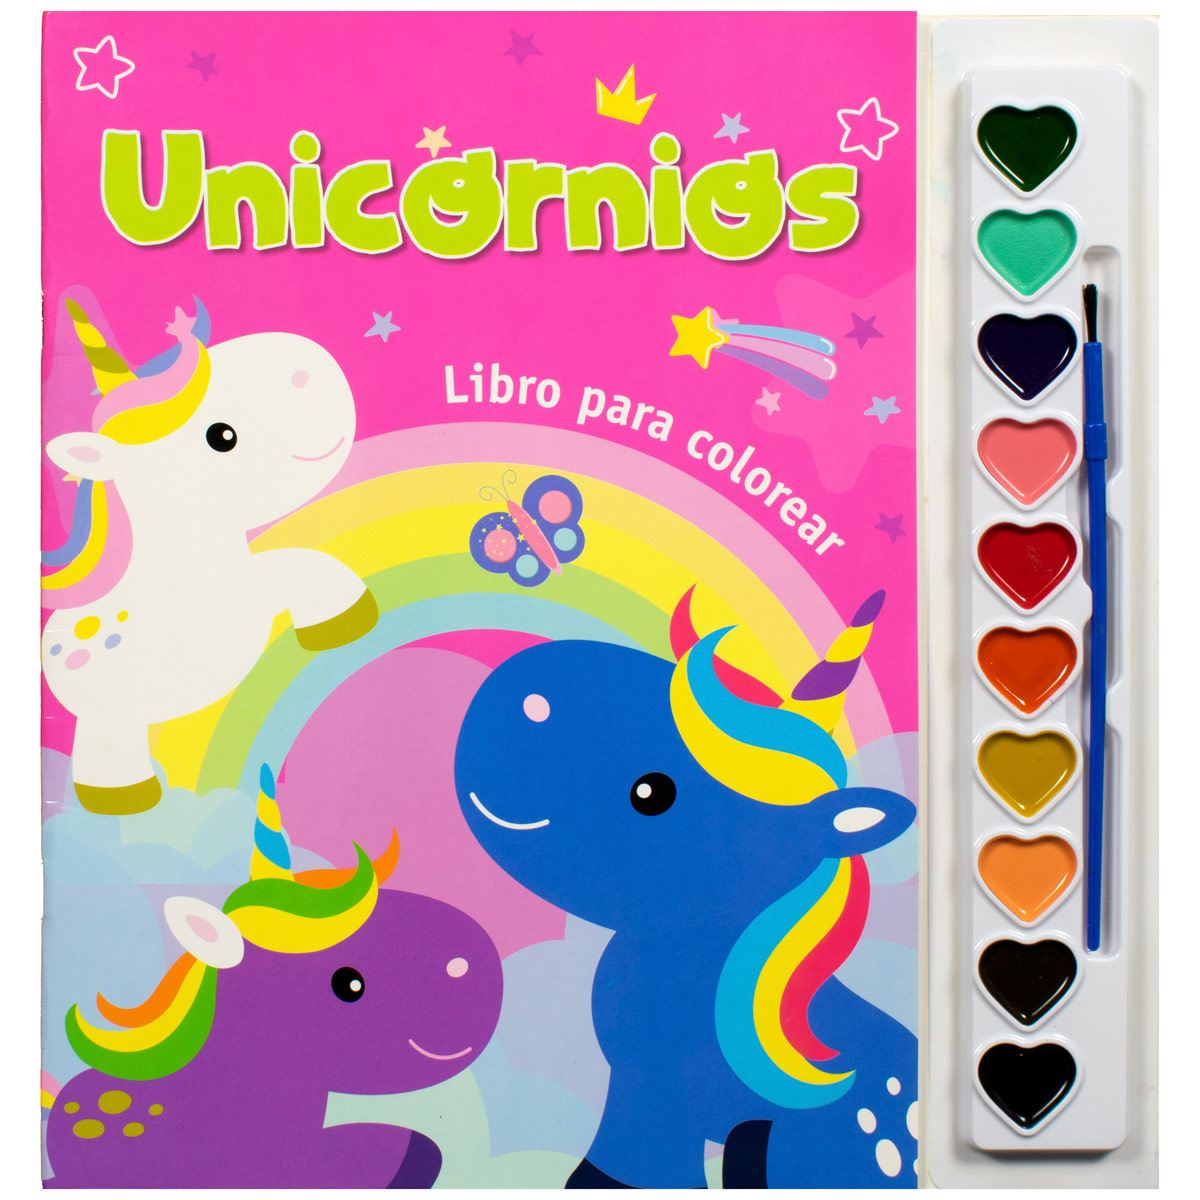 Unicornios: libro para colorear